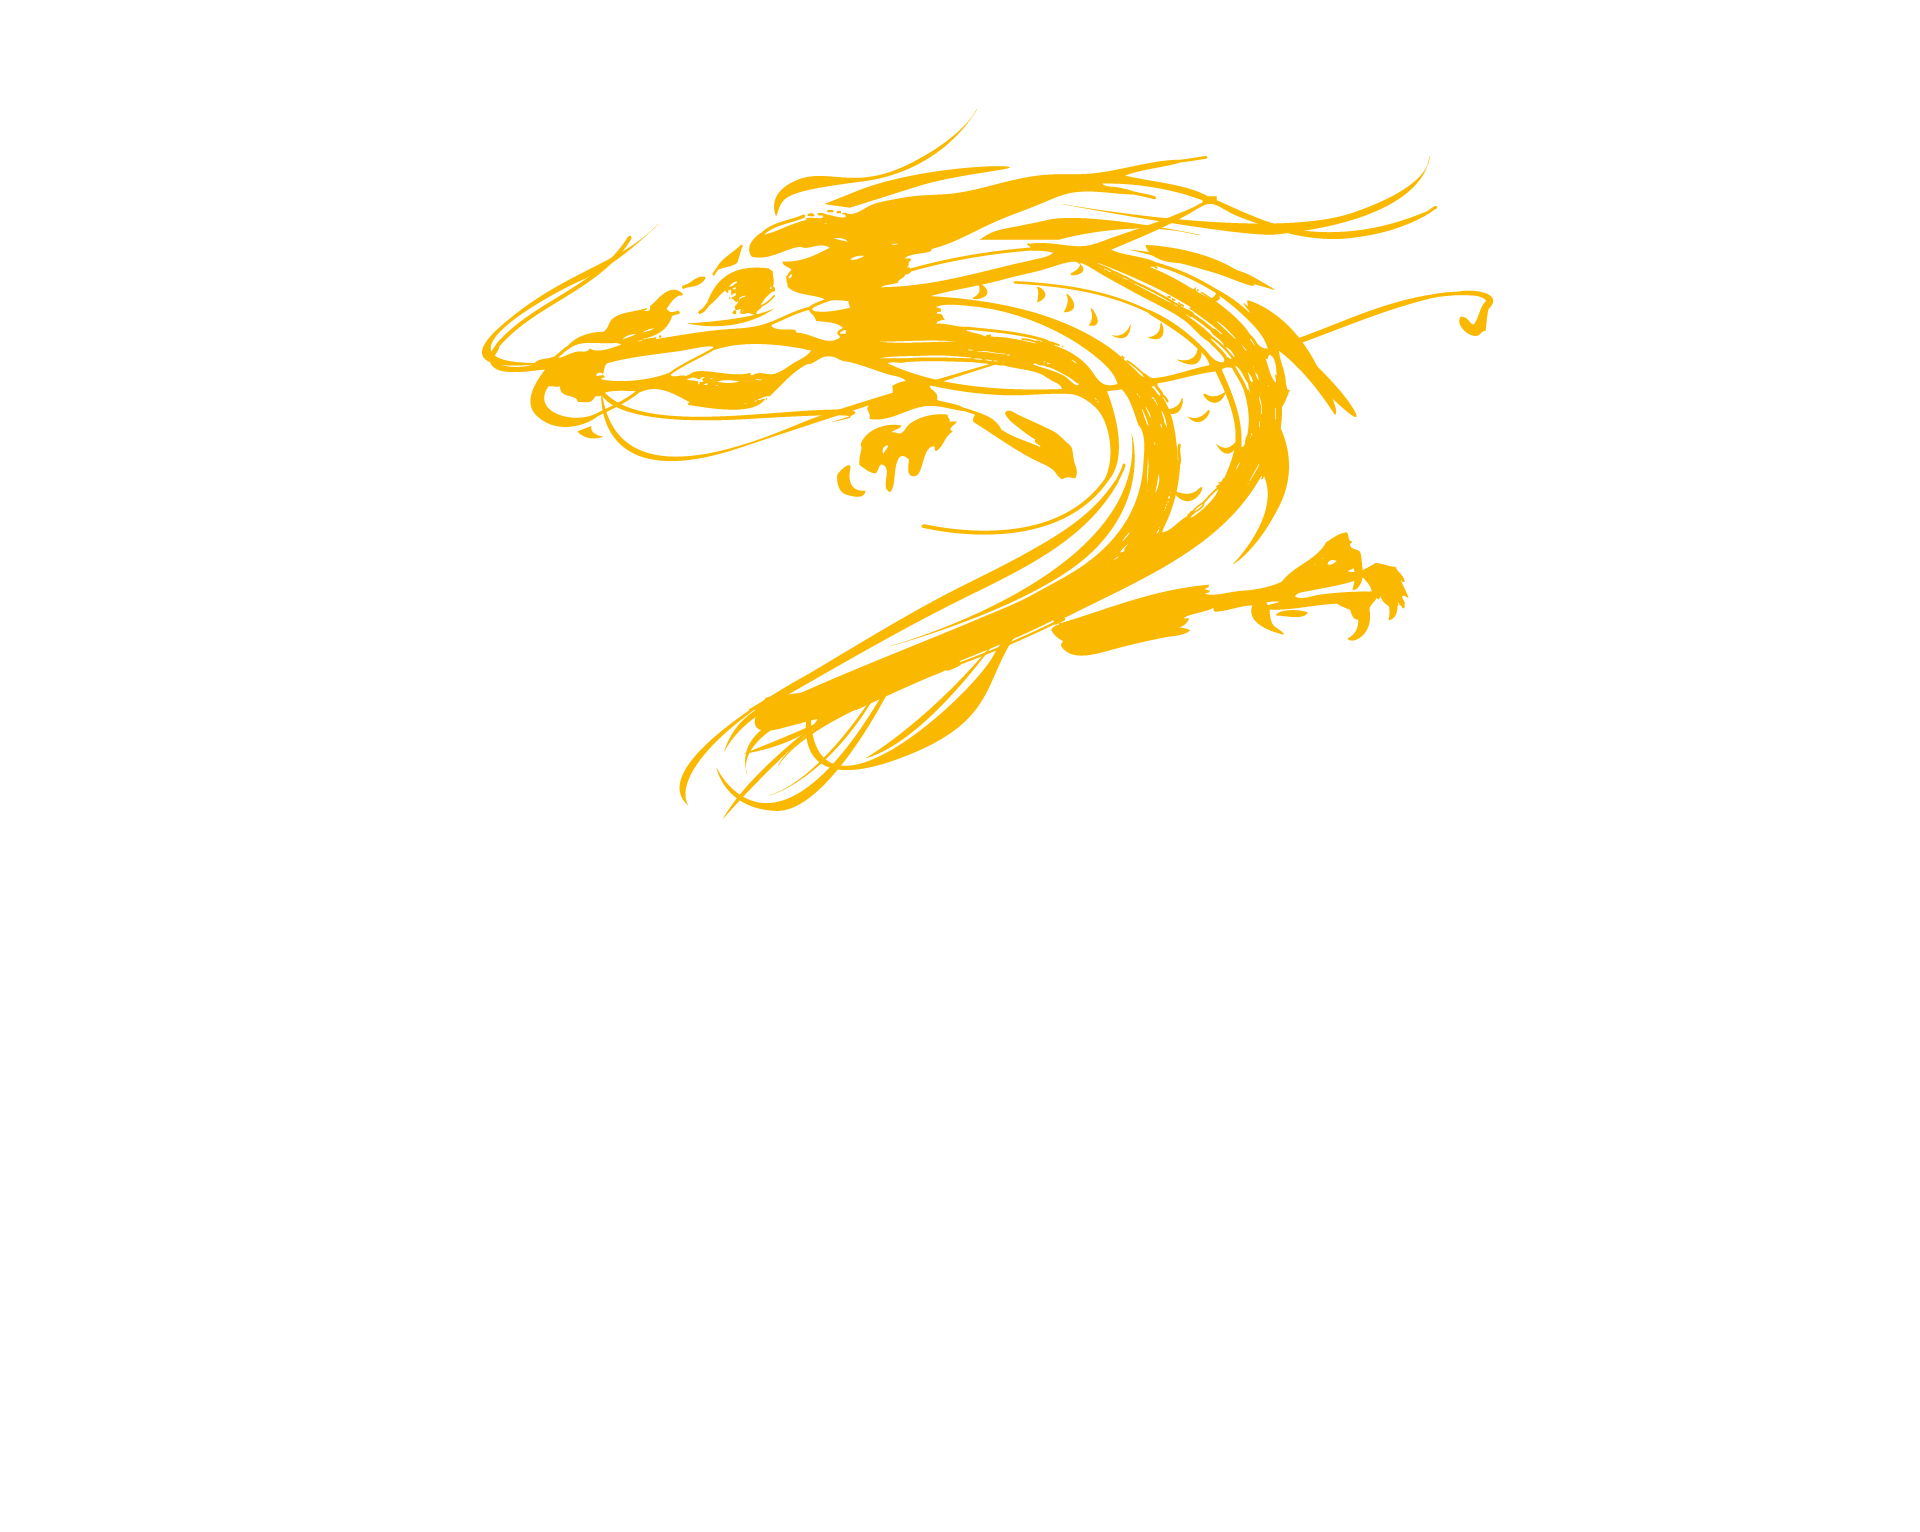 Asianline Consultoria Gastronômica